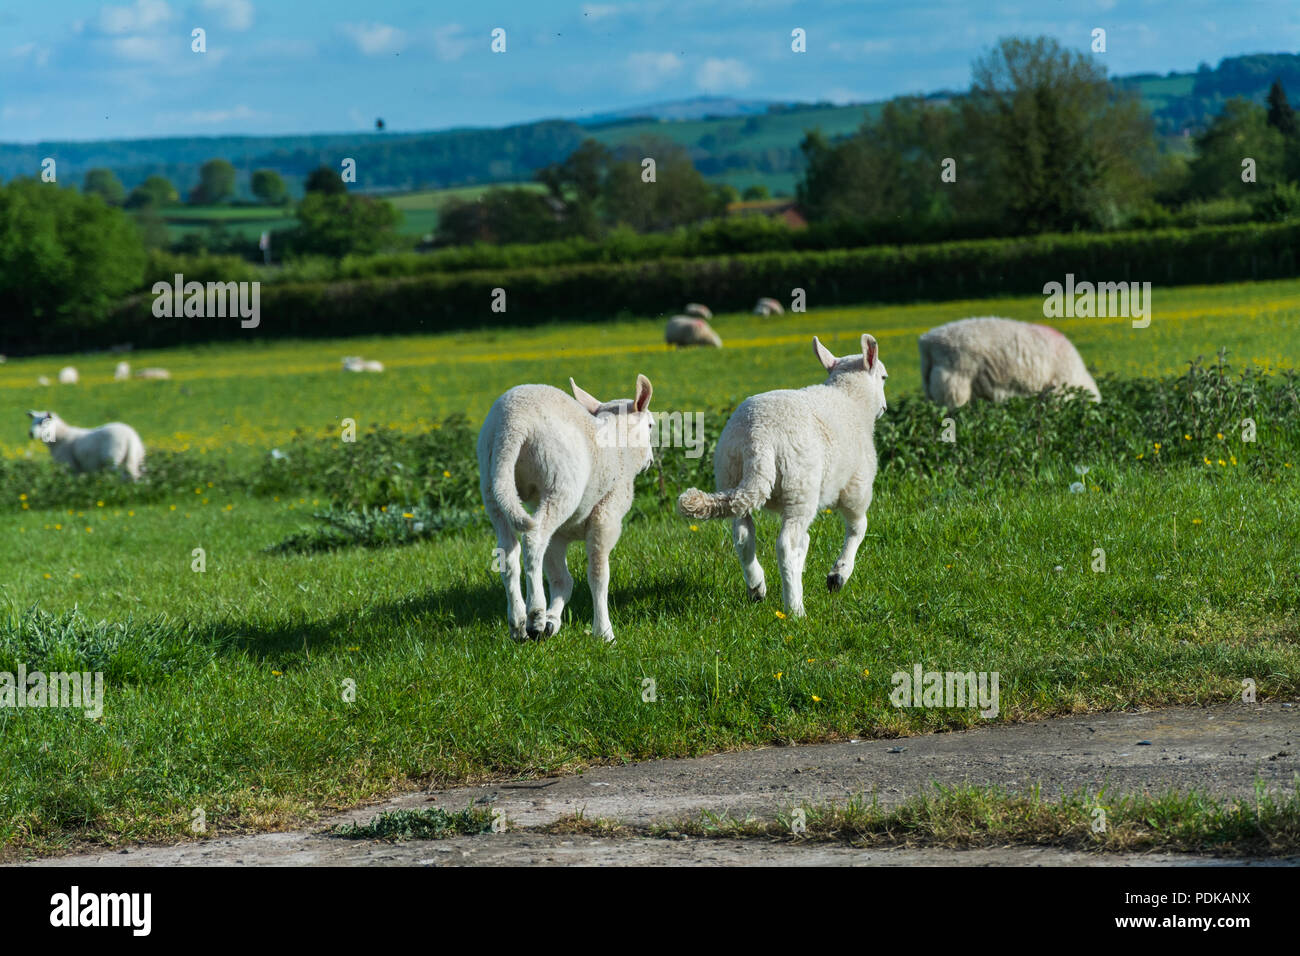 Jouer les agneaux dans un pré sur une journée ensoleillée. Wroxeter, Shropshire, au Royaume-Uni. Banque D'Images